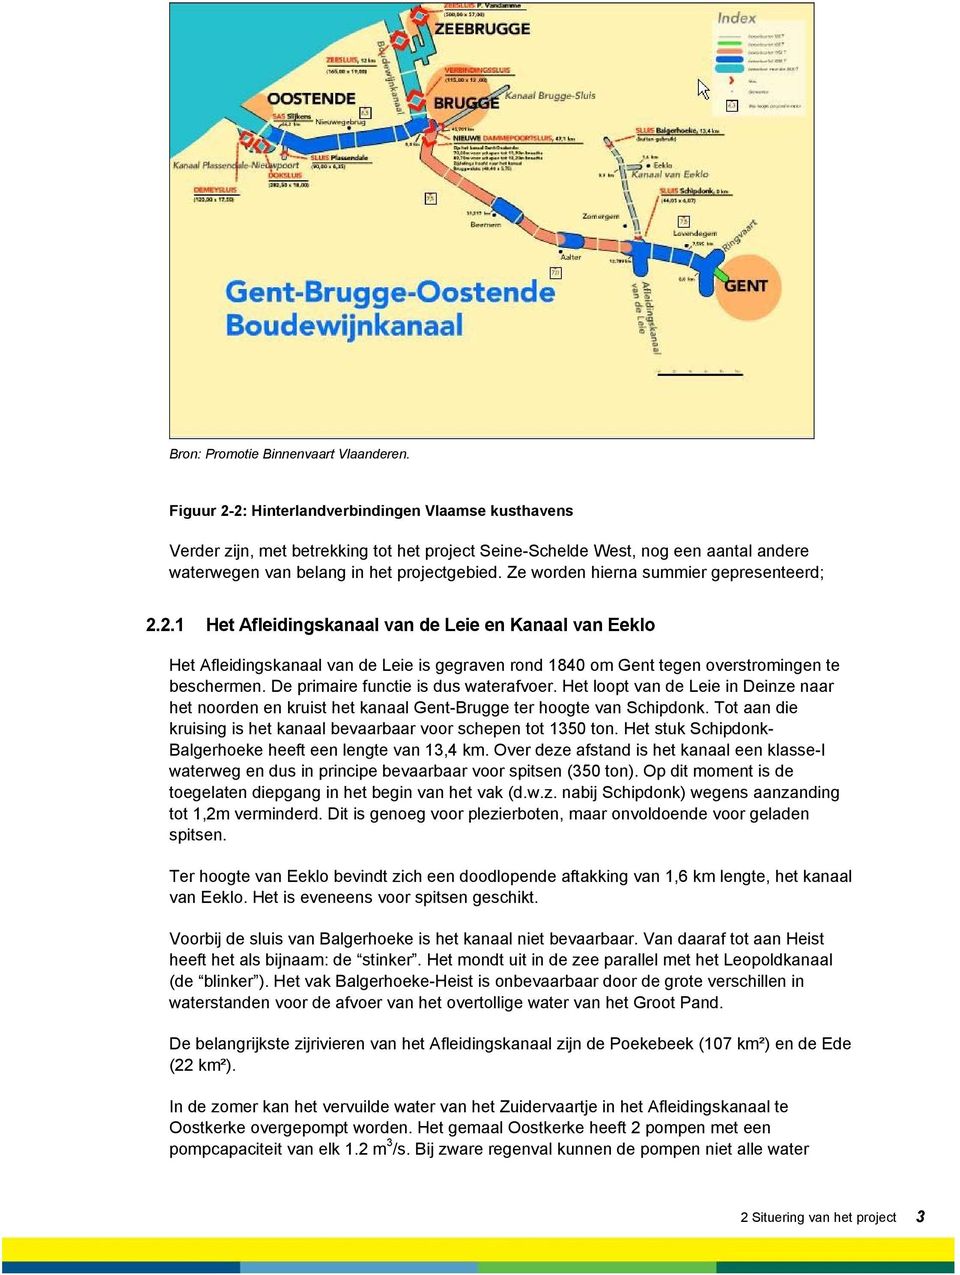 Ze worden hierna summier gepresenteerd; 2.2.1 Het Afleidingskanaal van de Leie en Kanaal van Eeklo Het Afleidingskanaal van de Leie is gegraven rond 1840 om Gent tegen overstromingen te beschermen.